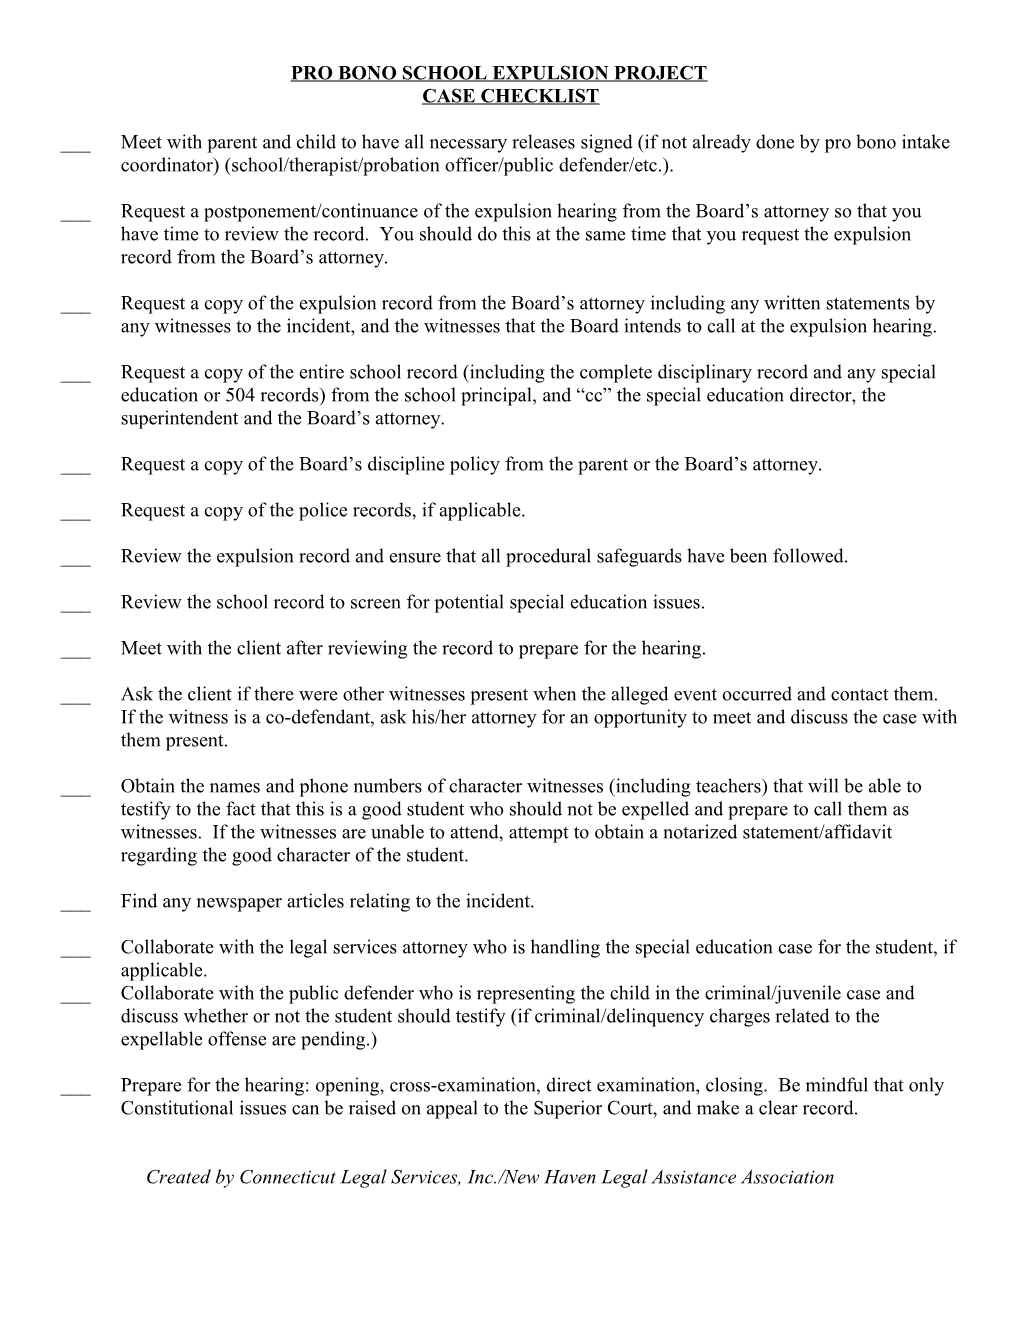 School Expulsion Project Checklist